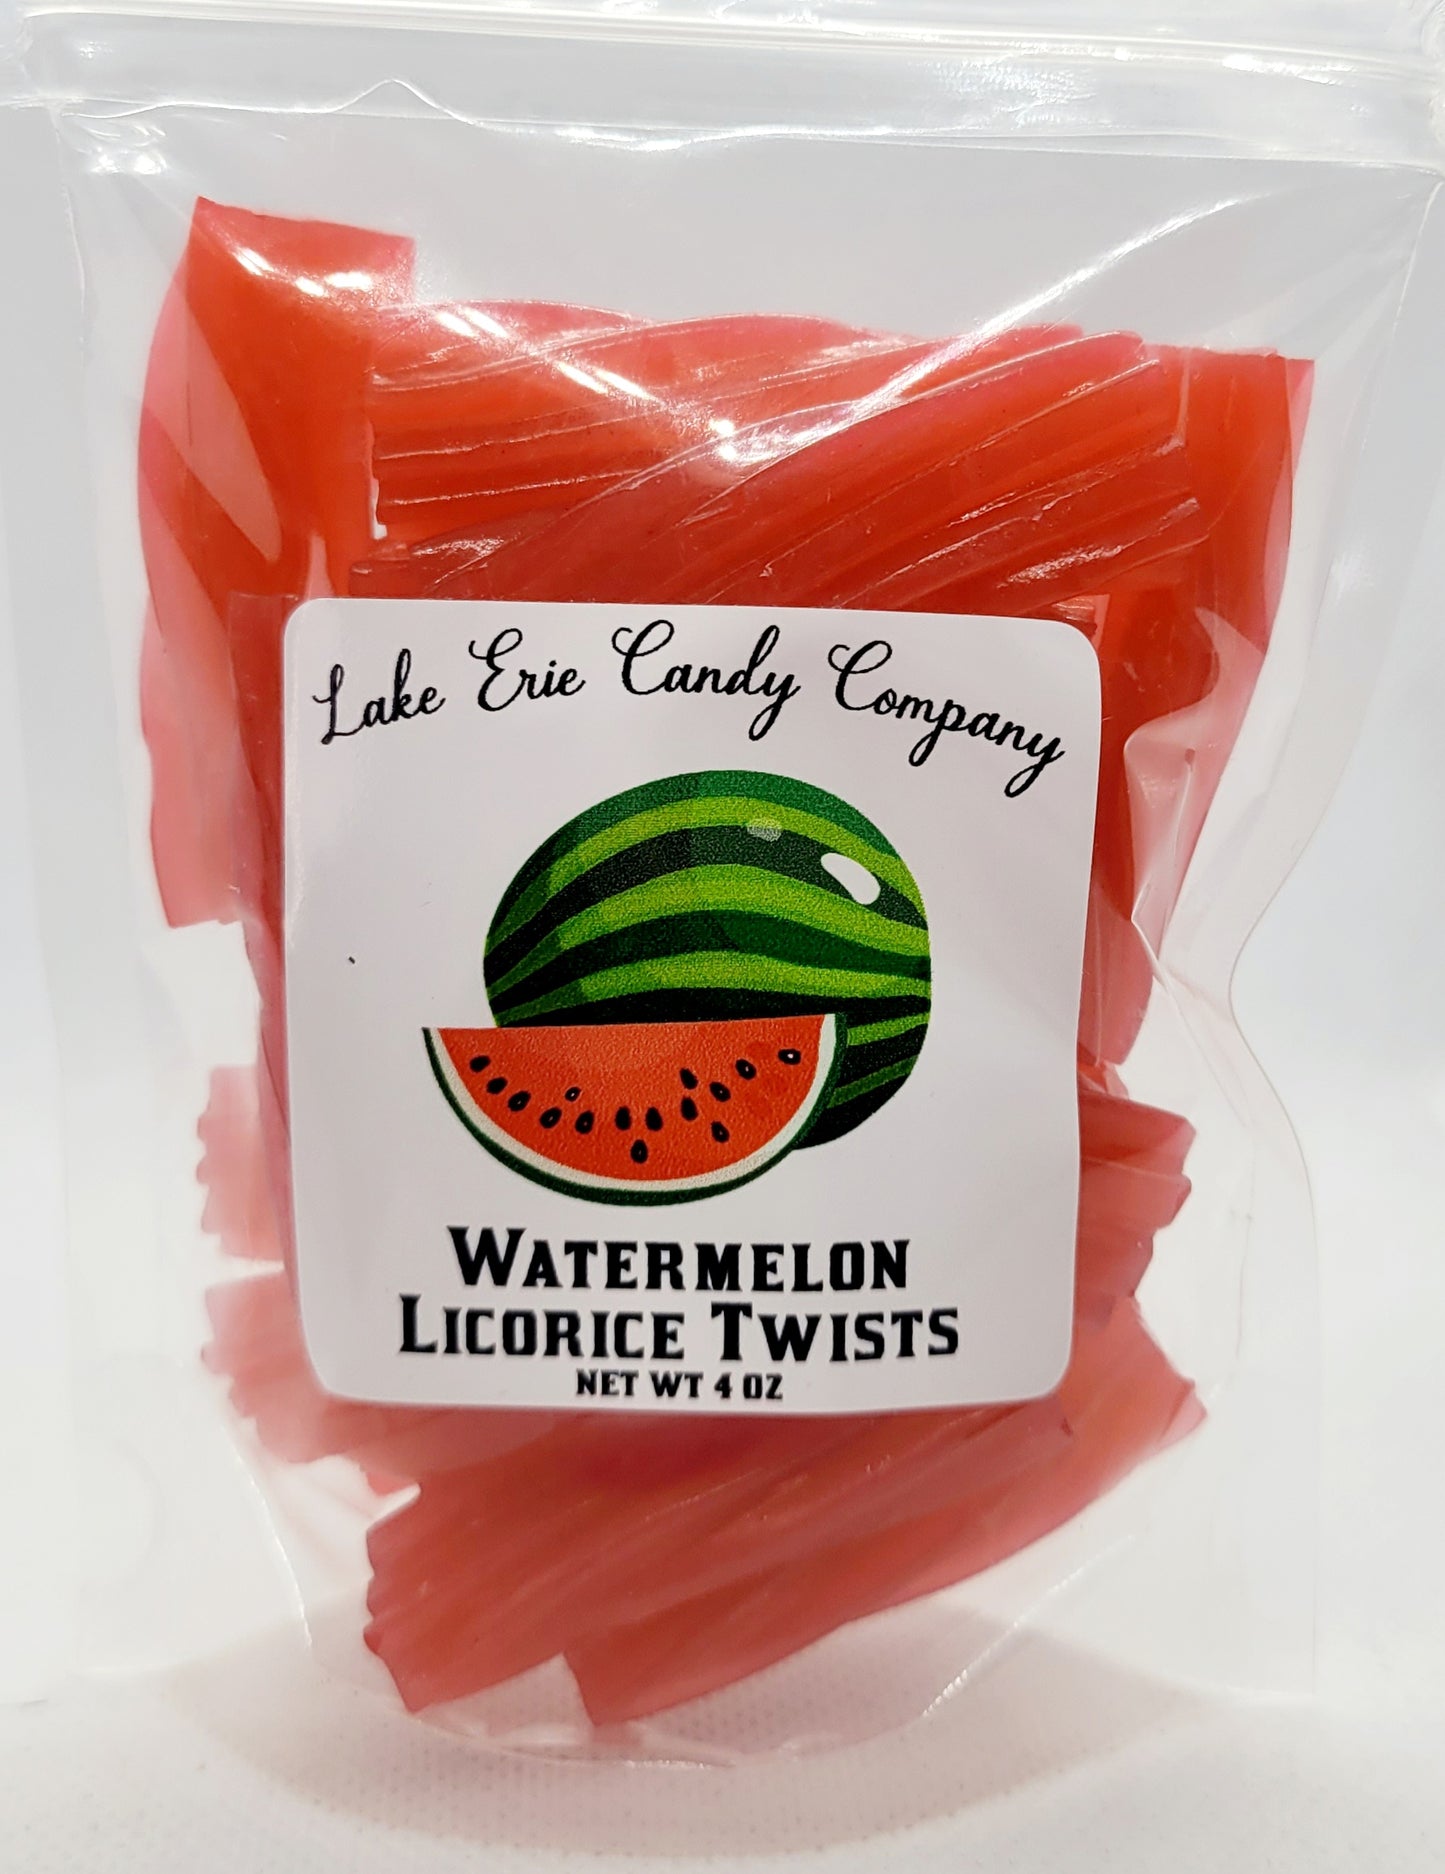 Watermelon Licorice Twists